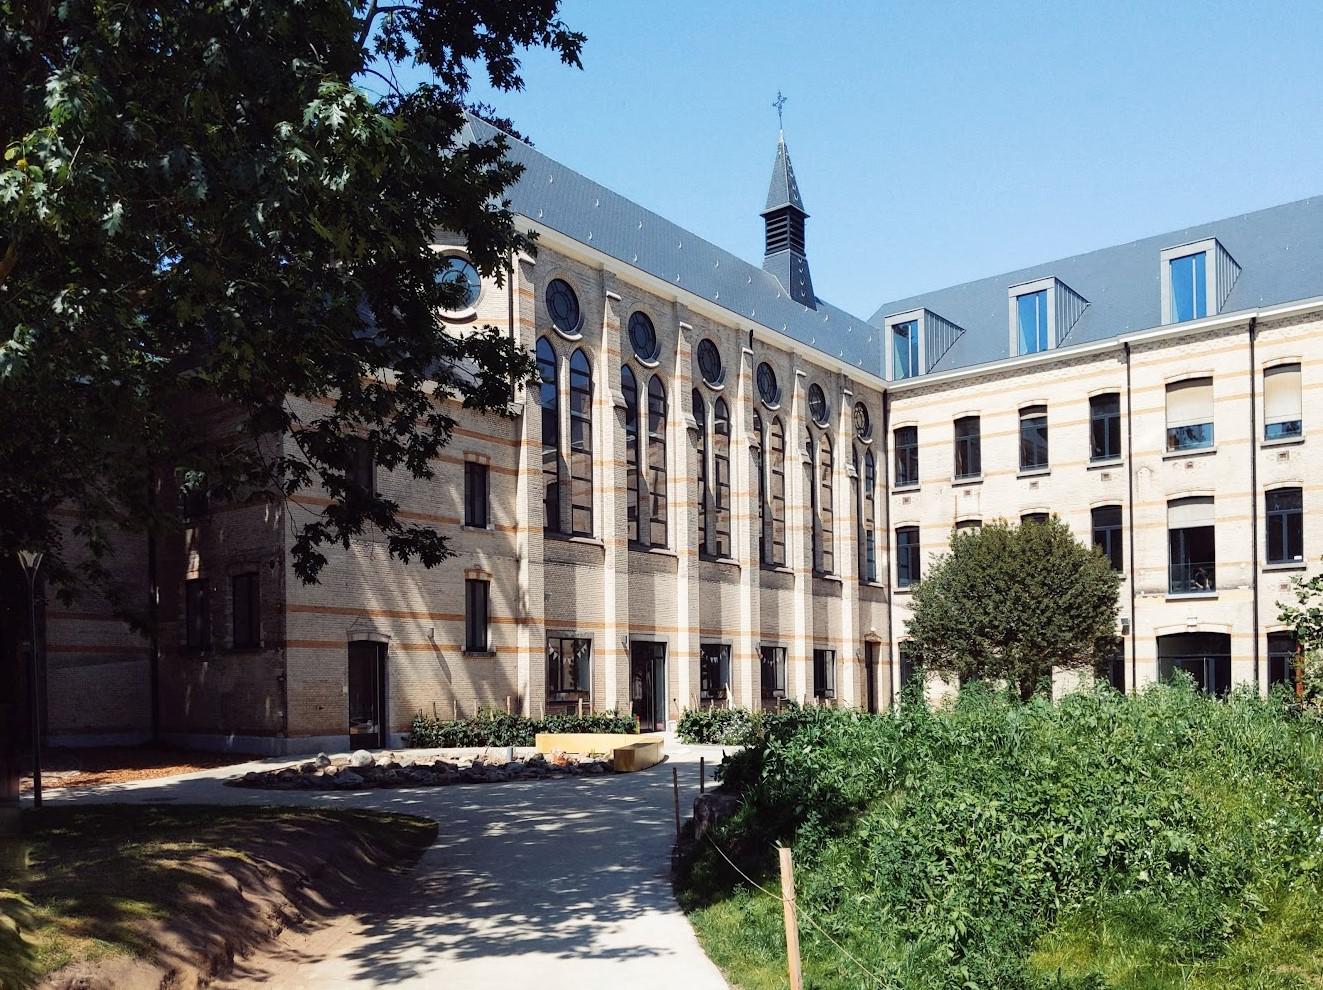 Herbestemming Klooster Lamorinièrestraat in Antwerpen als onderwerp van stabiliteitsstudie door ingenieursbureau Lisst